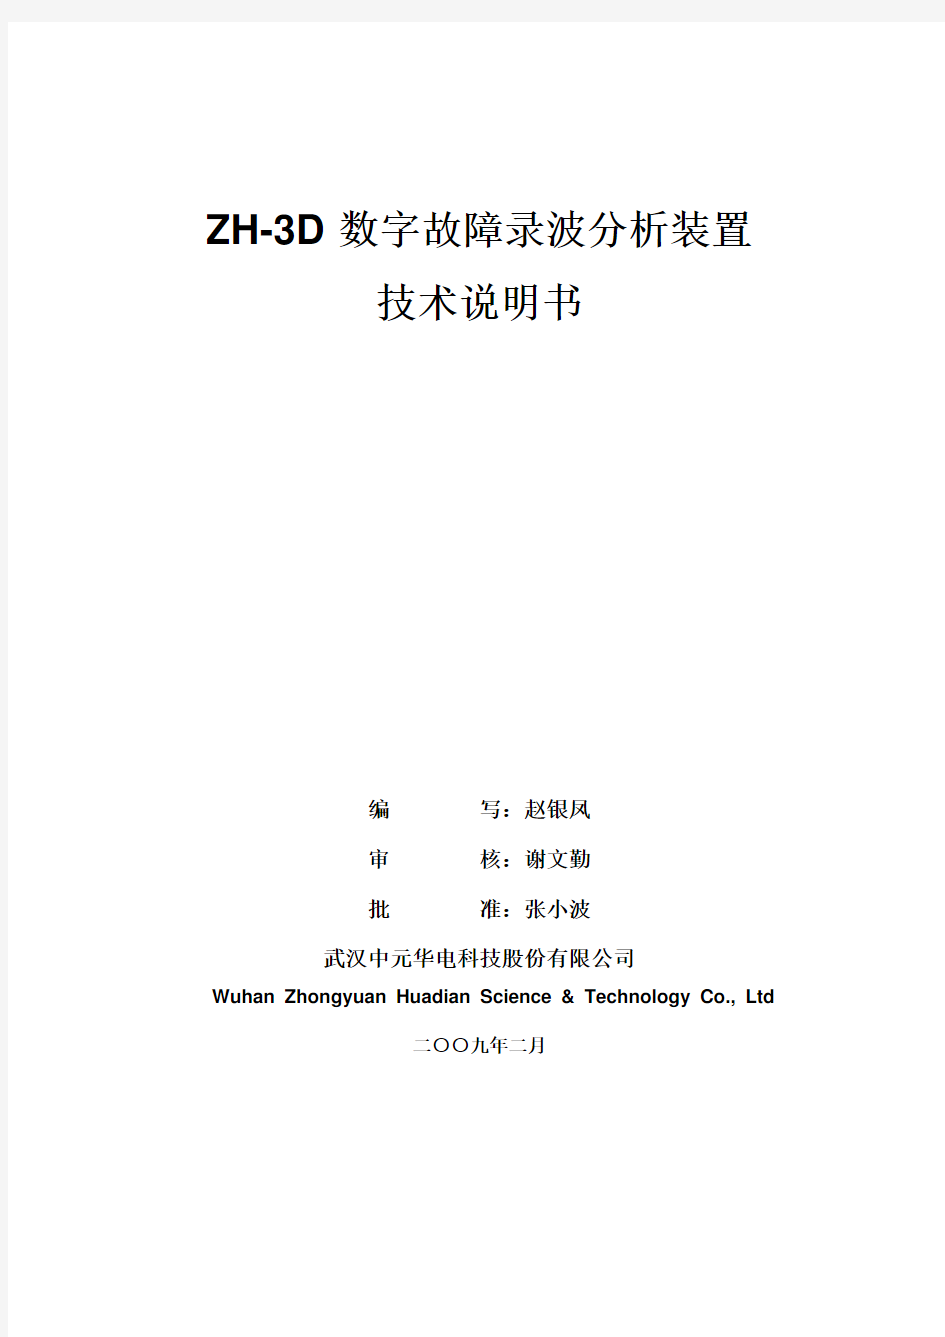 ZH-3D技术说明书